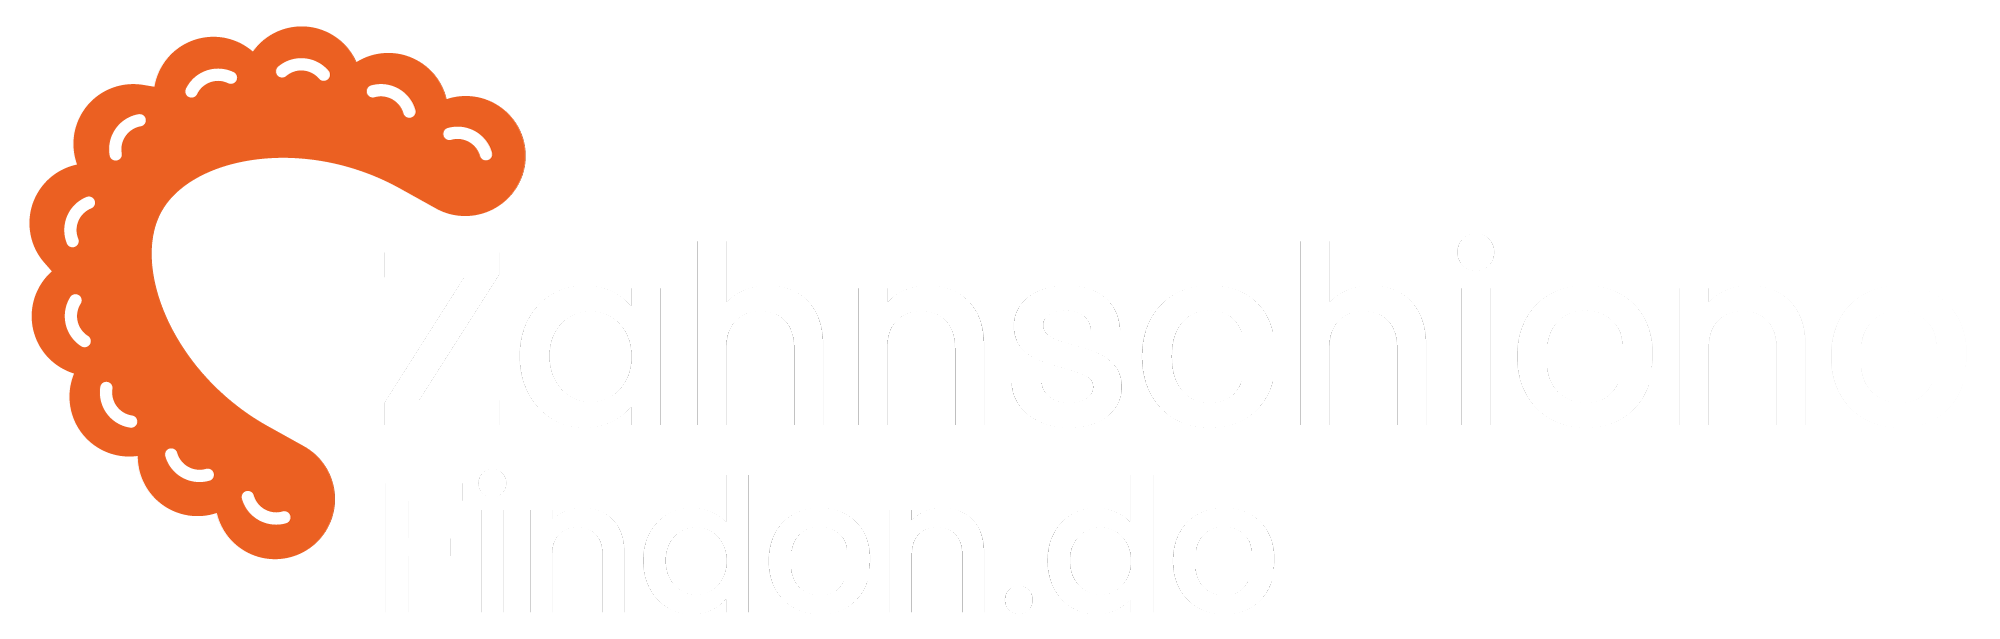 zahnschiene-finden-logo-hell